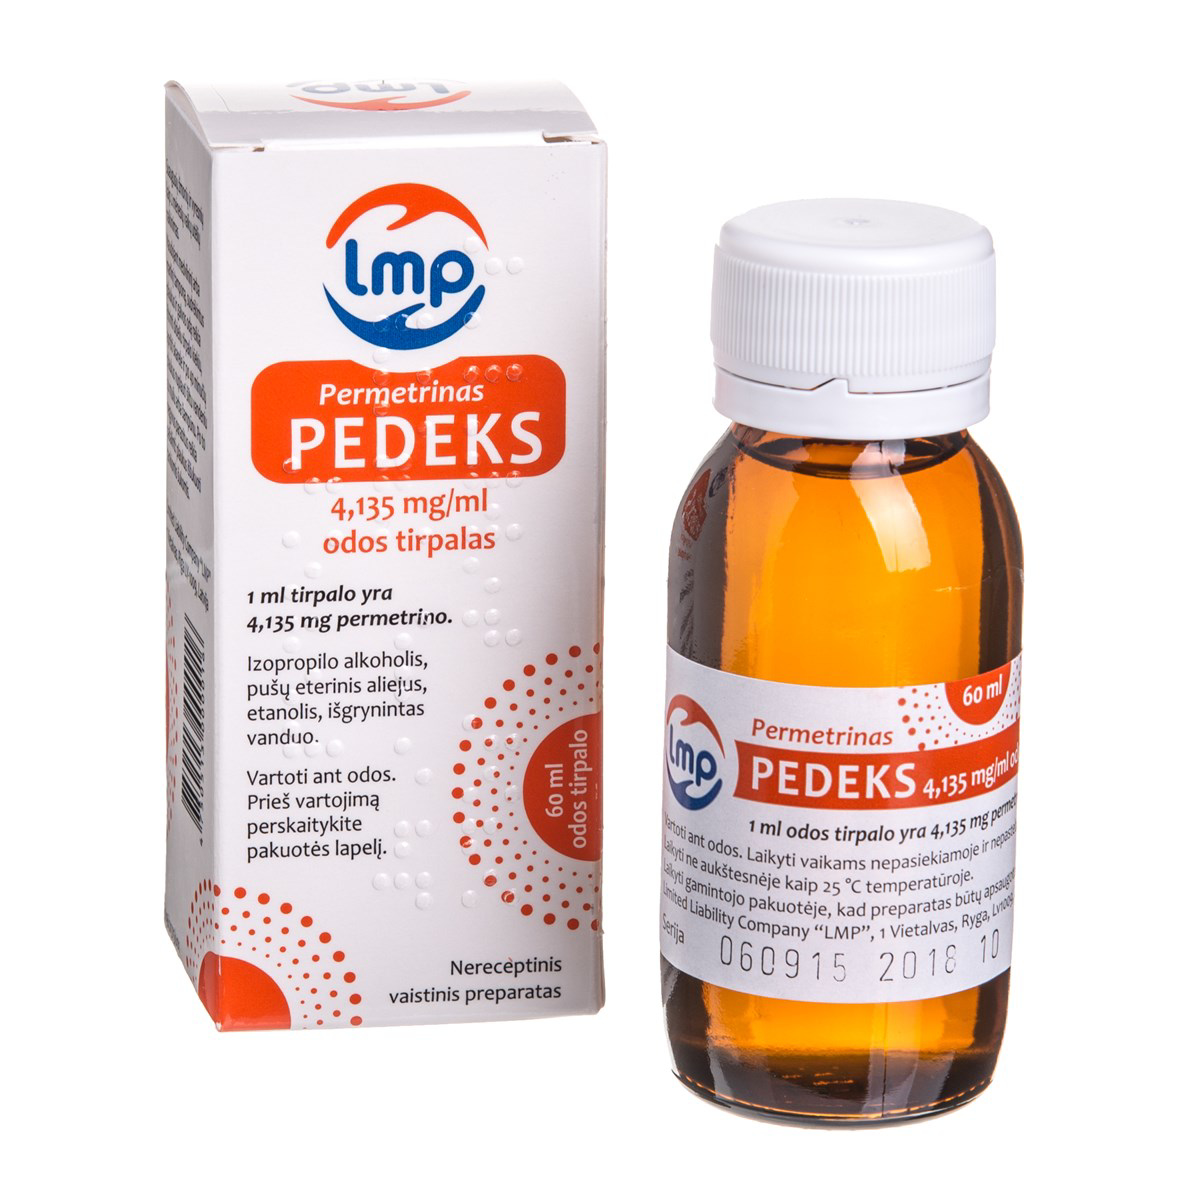 PEDEKS, 4,135 mg/ml, odos tirpalas, 60 ml